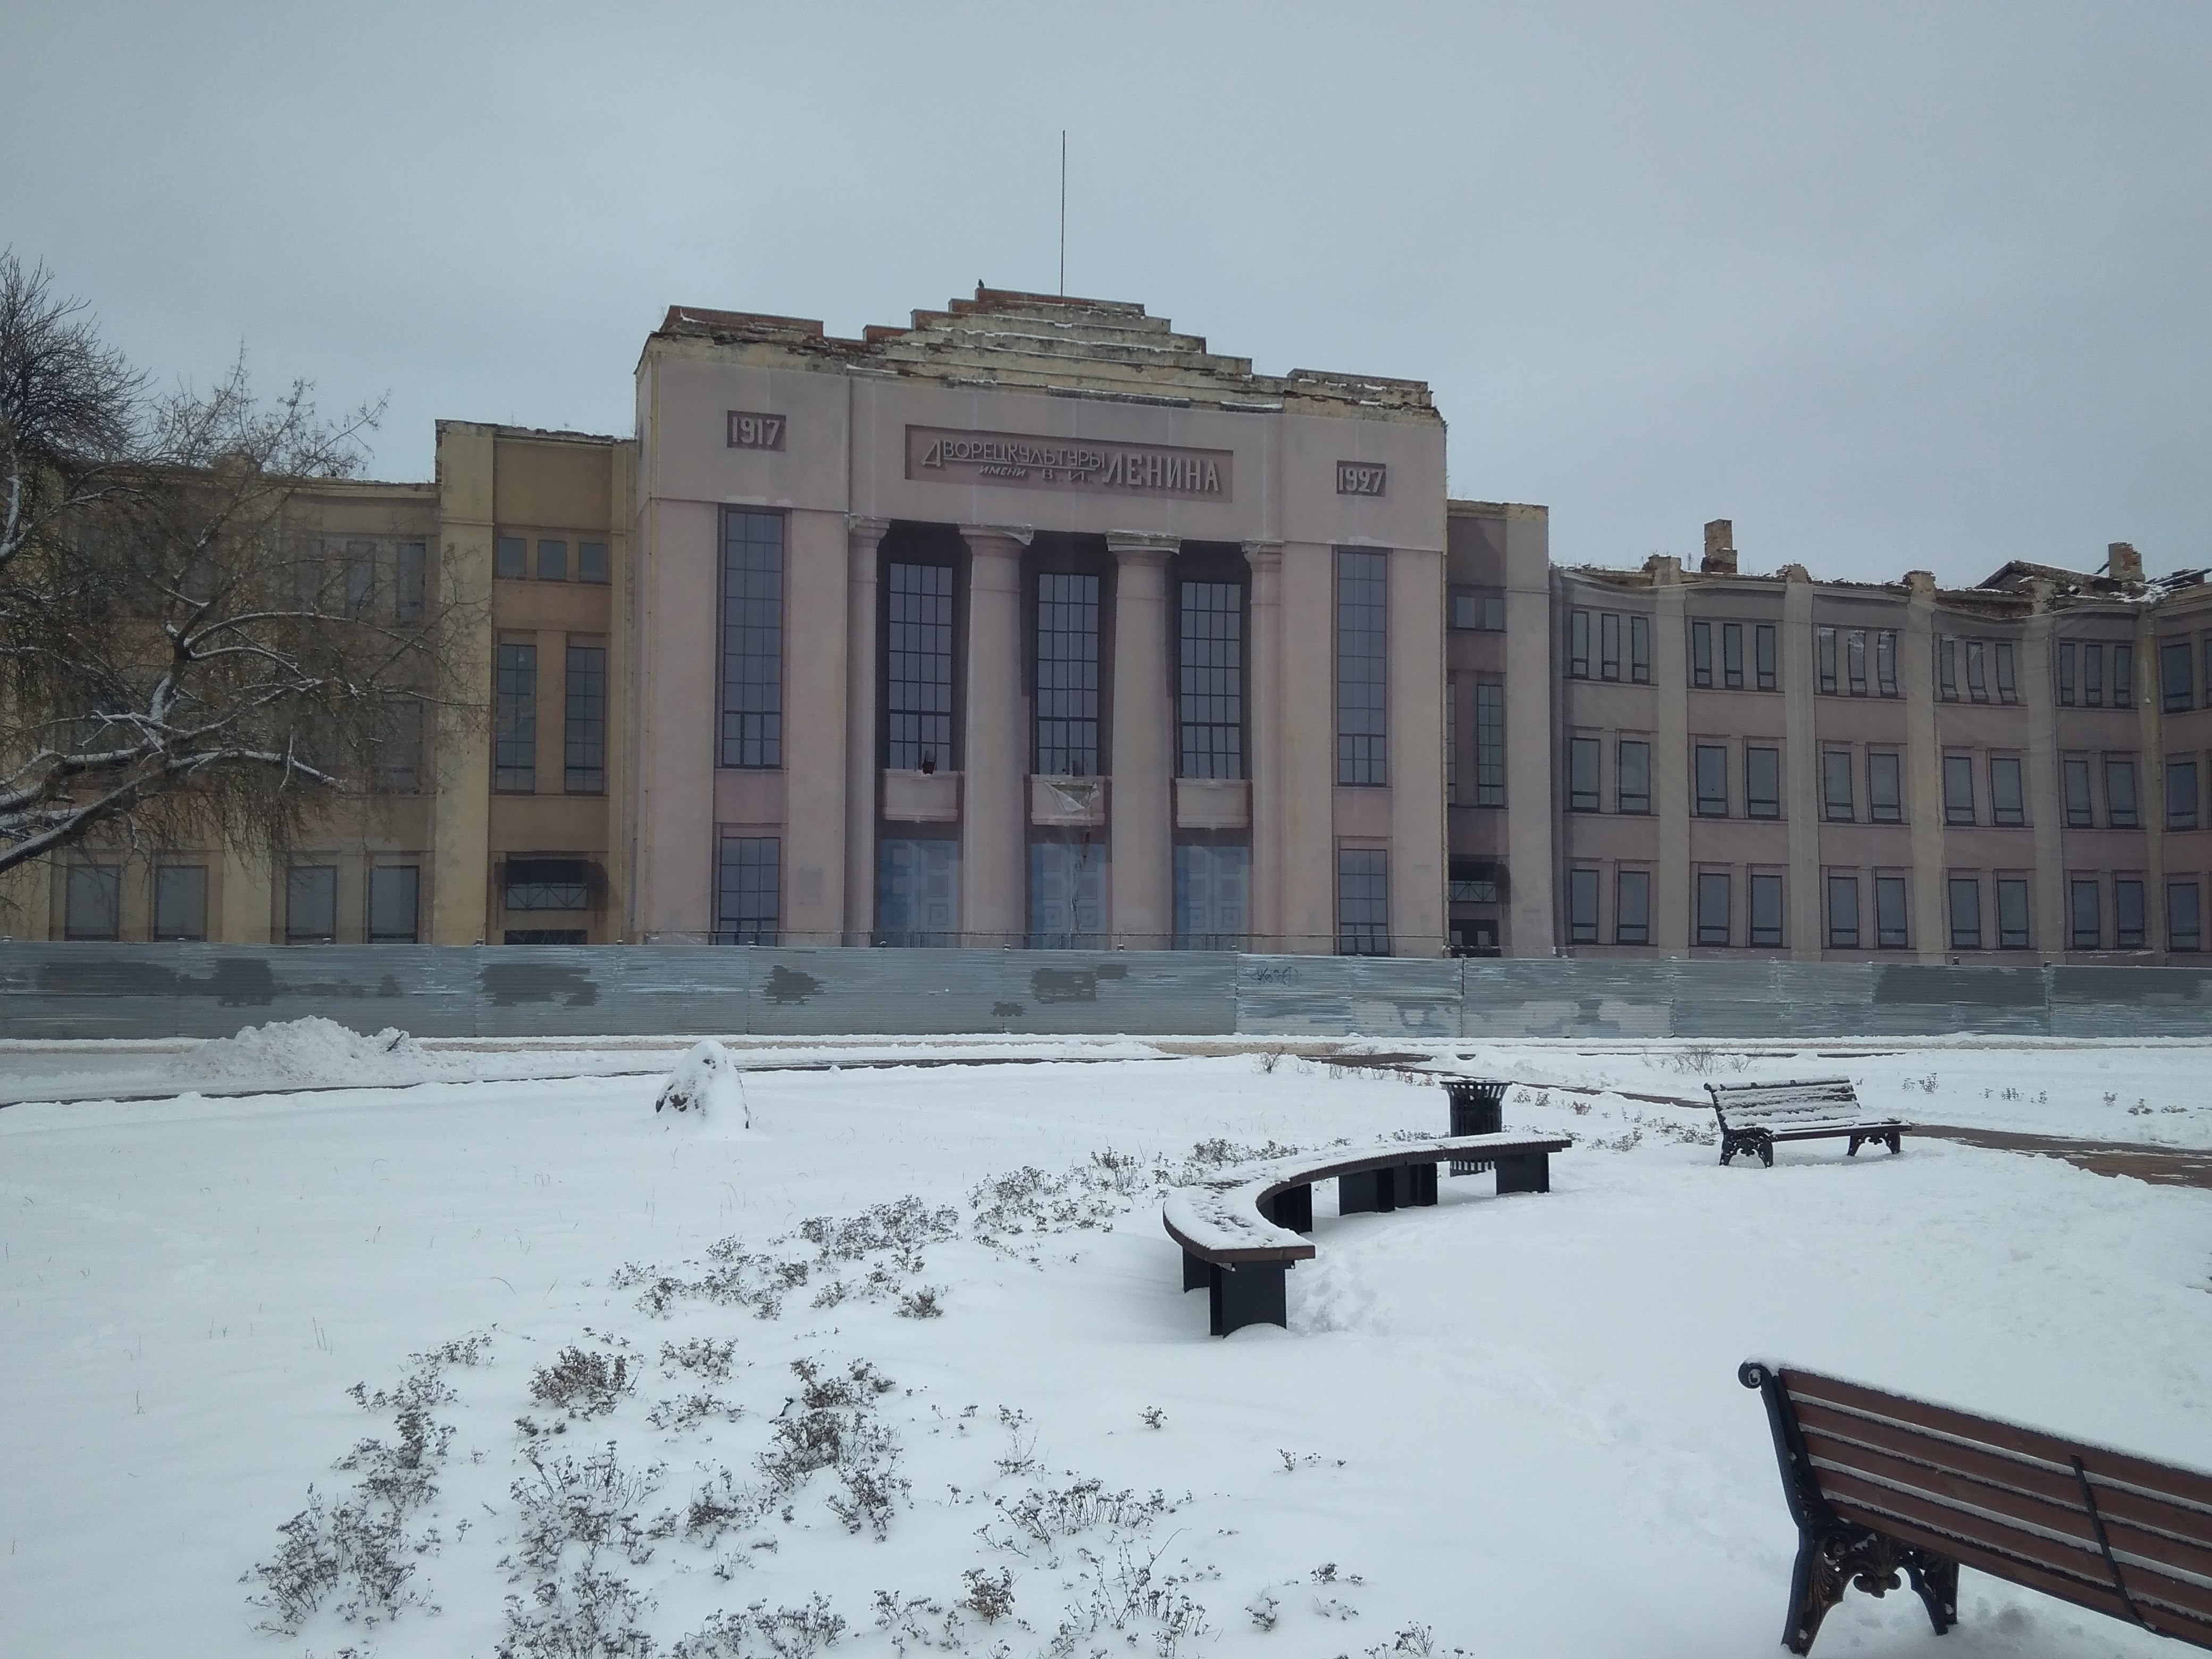 Дворец Культуры им. Ленина в Нижнем Новгороде отреставрируют к 2026 году  - фото 1